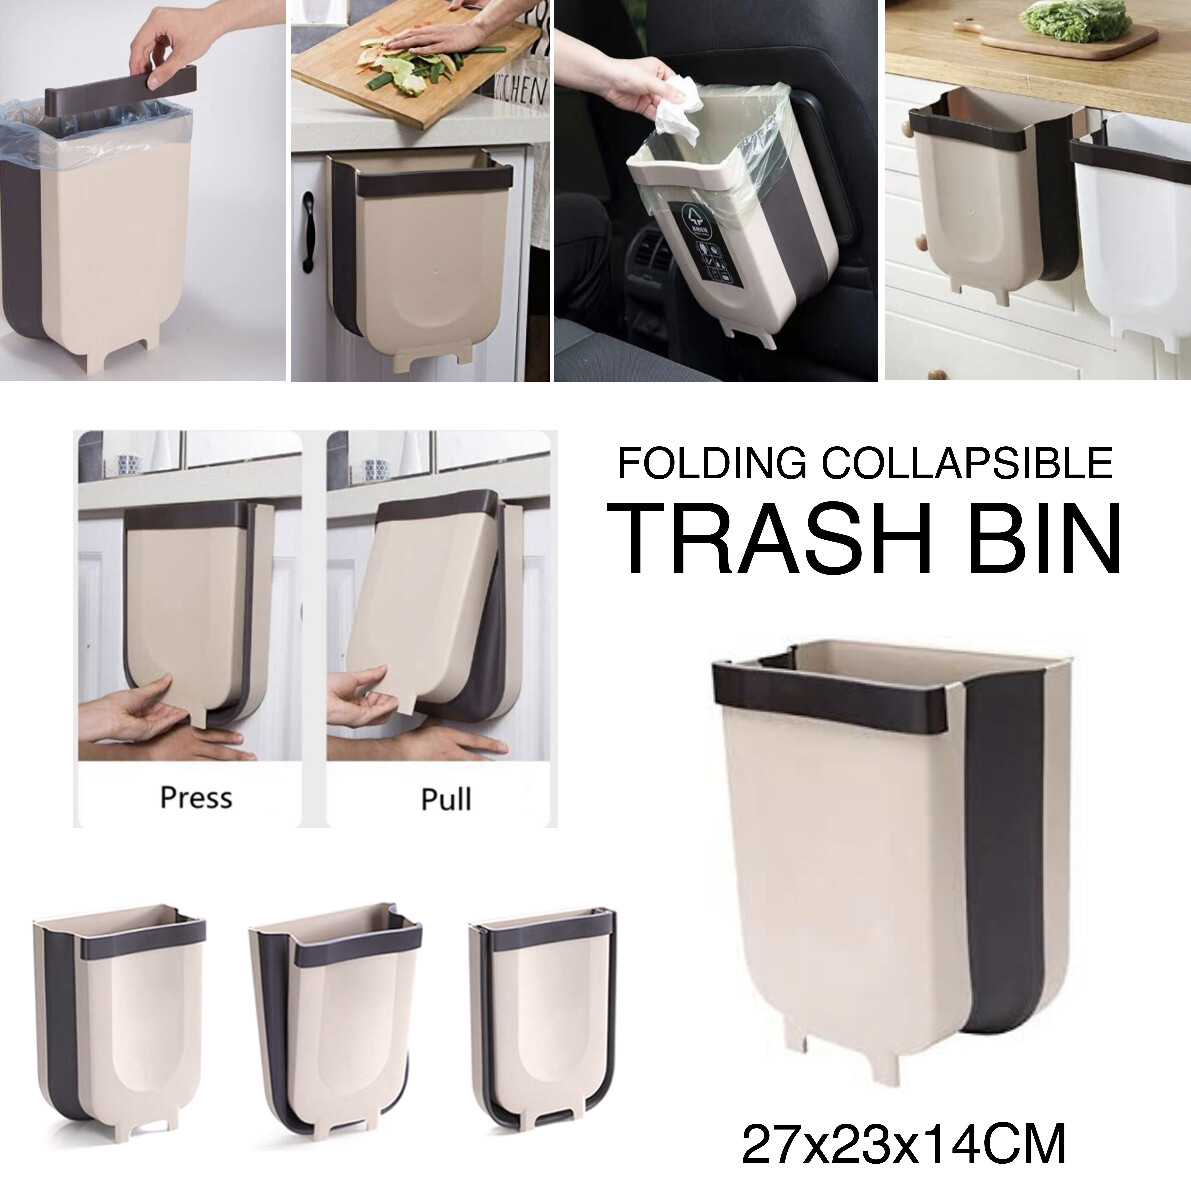 Collapsible Trash Bin